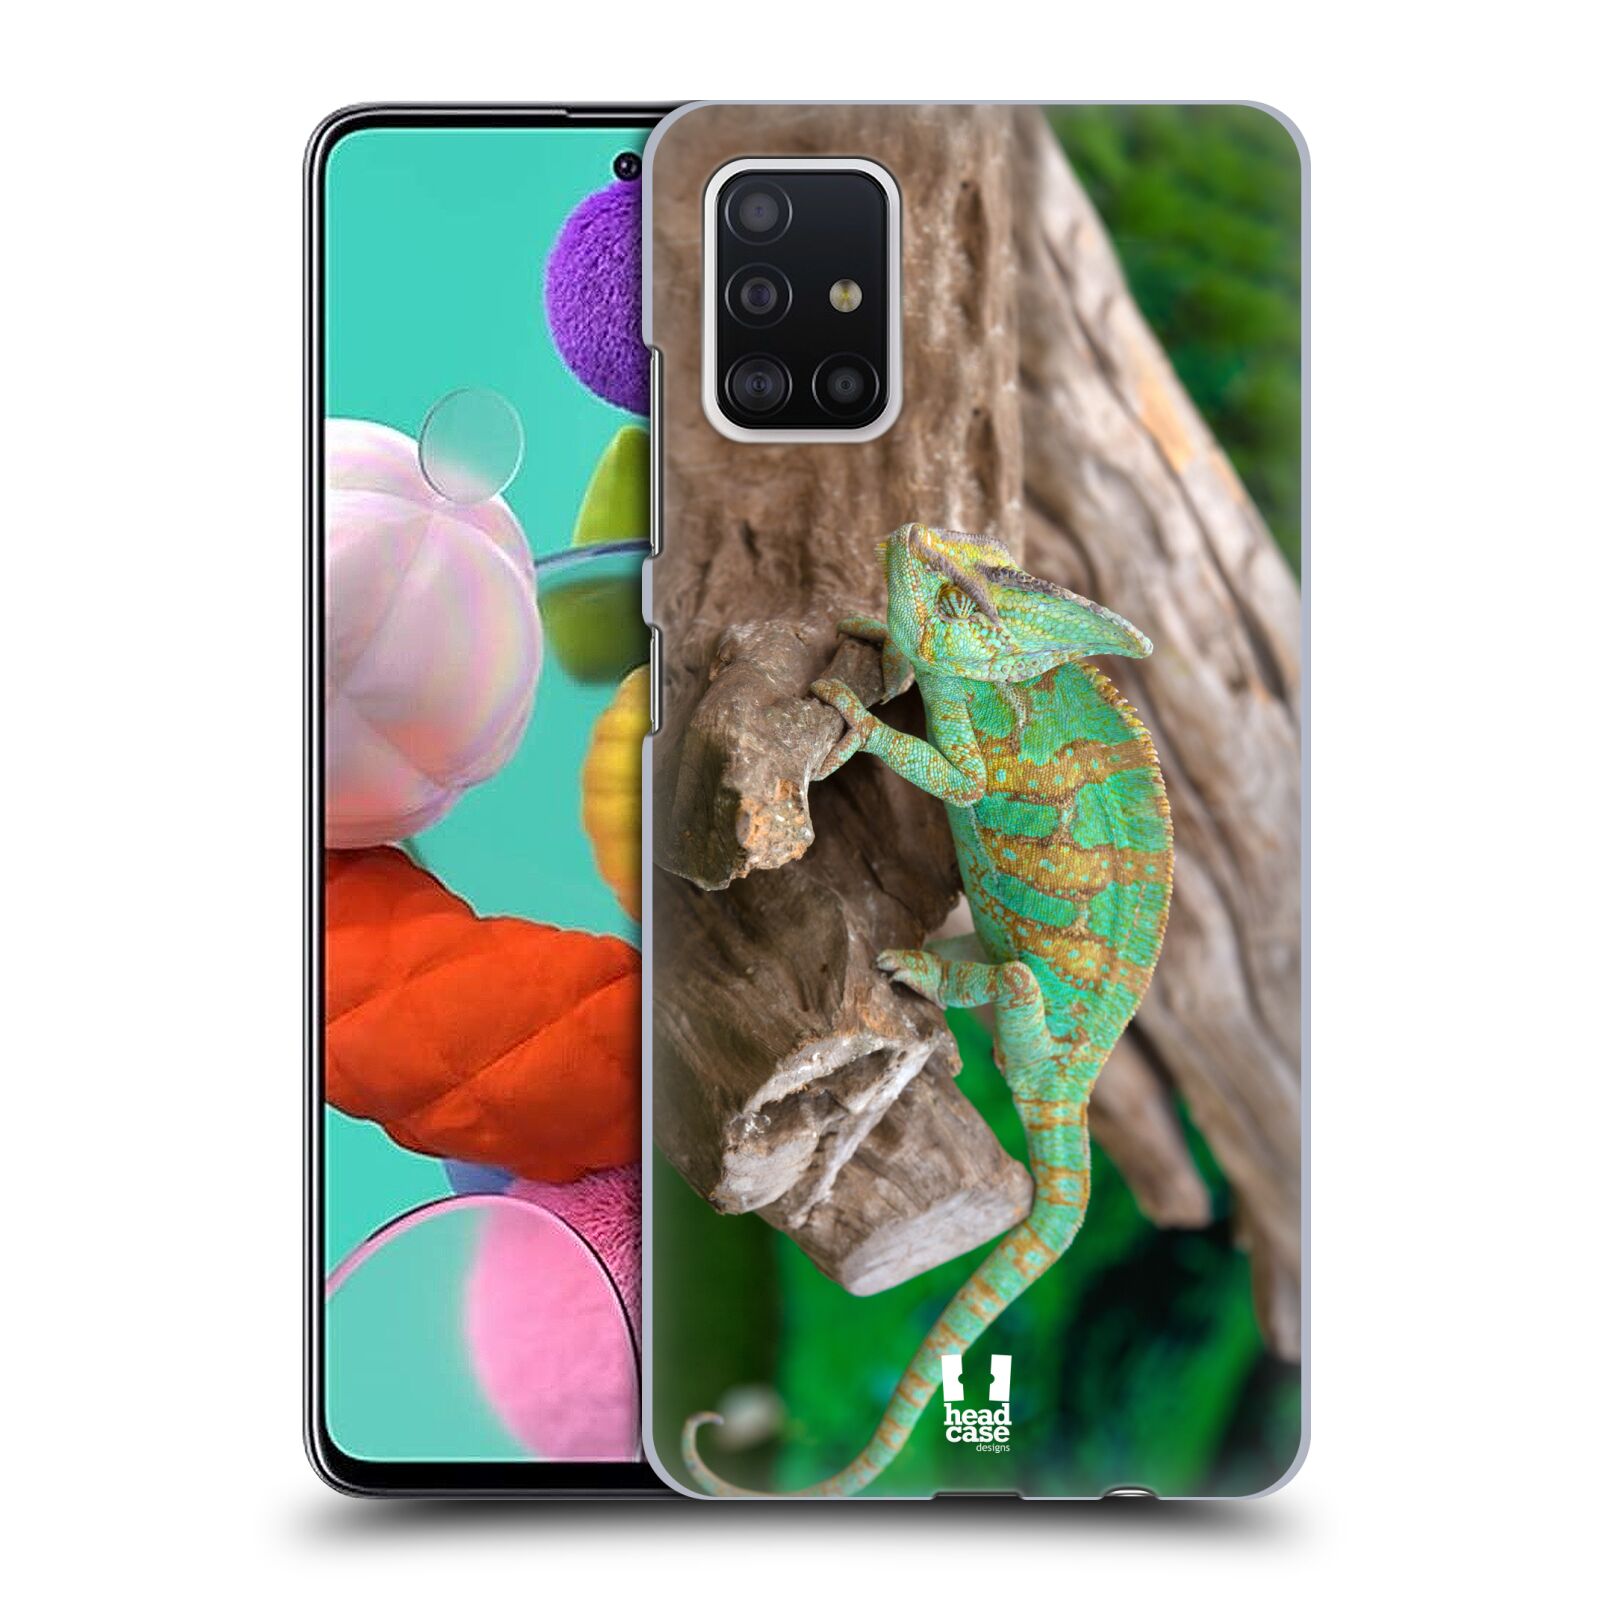 Pouzdro na mobil Samsung Galaxy A51 - HEAD CASE - vzor slavná zvířata foto chameleon